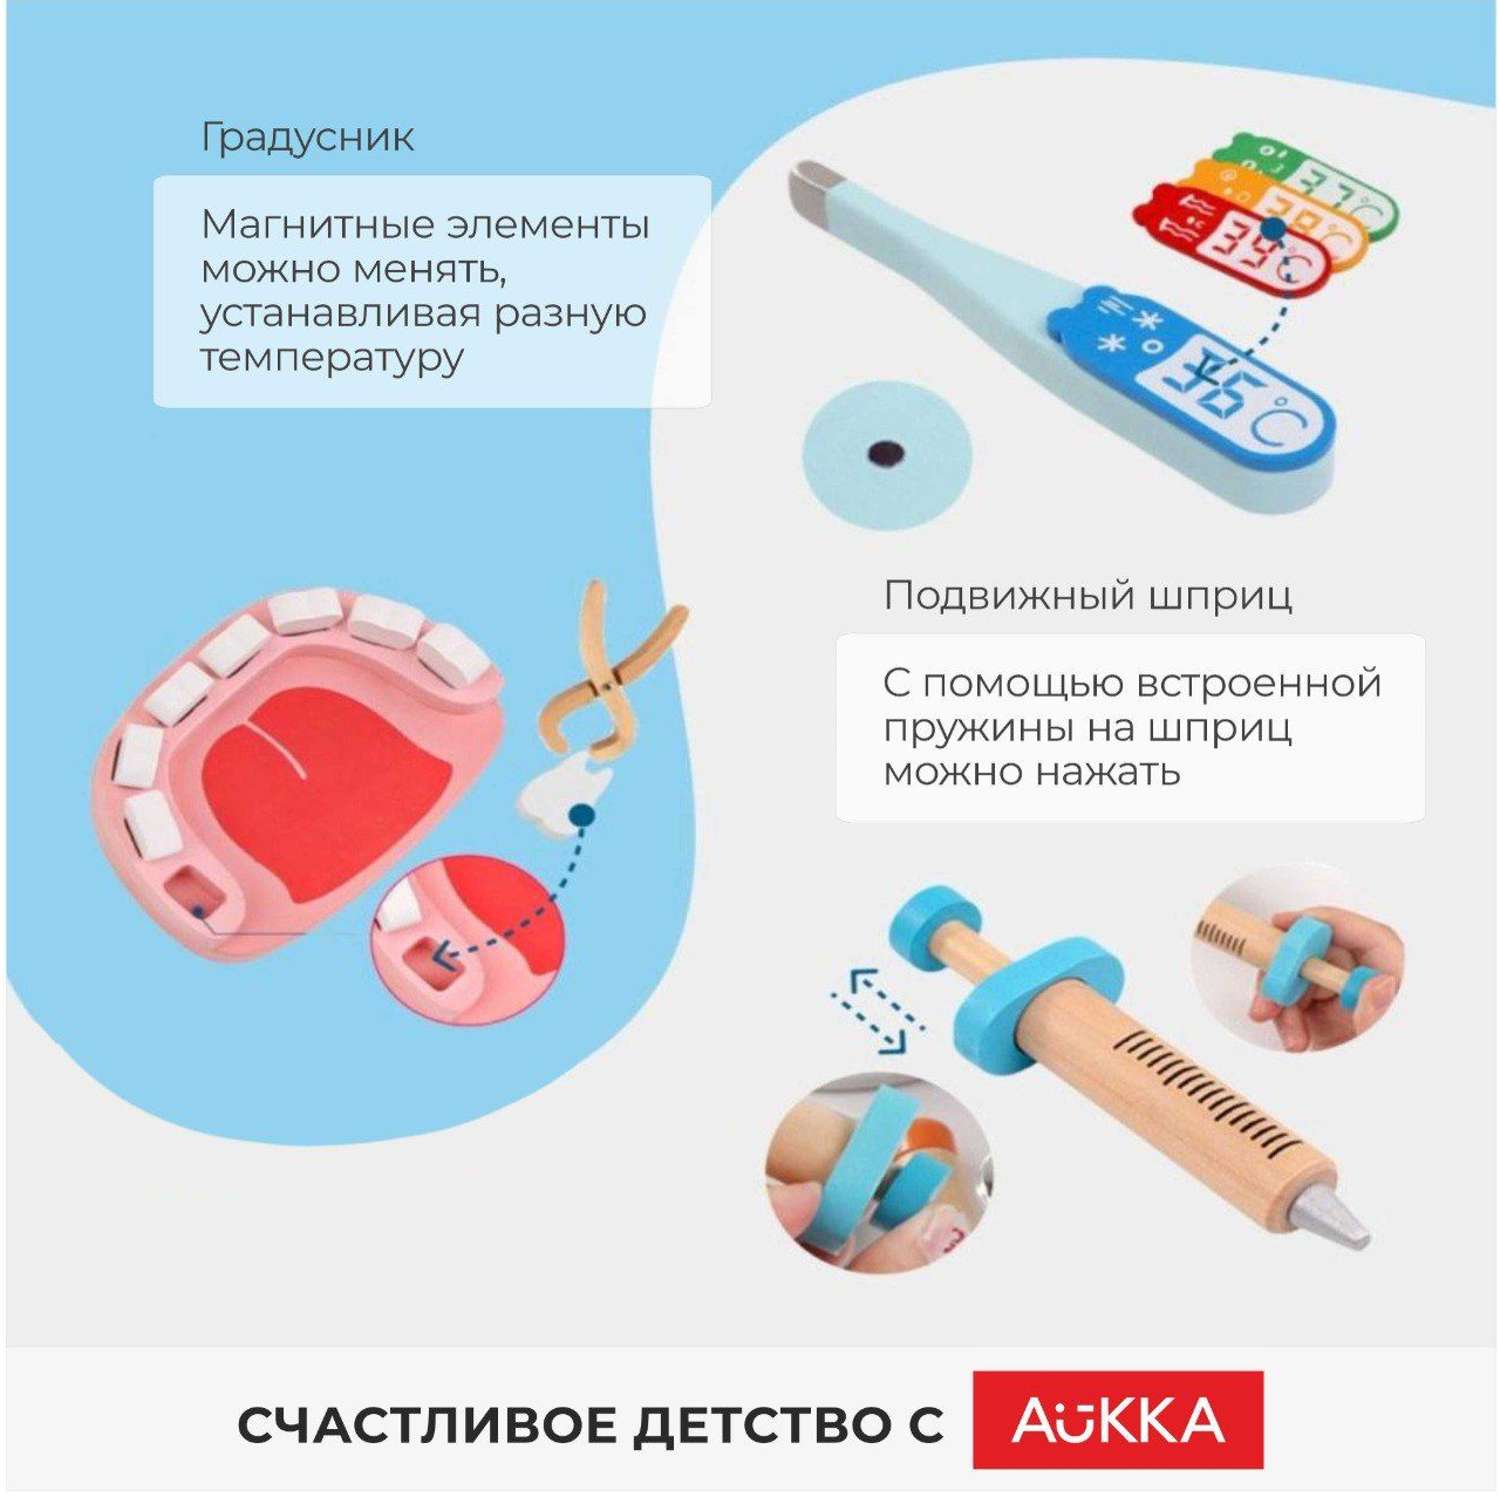 Игровой набор Стоматолог AUKKA Детские деревянные медицинские инструменты в сумке - фото 2